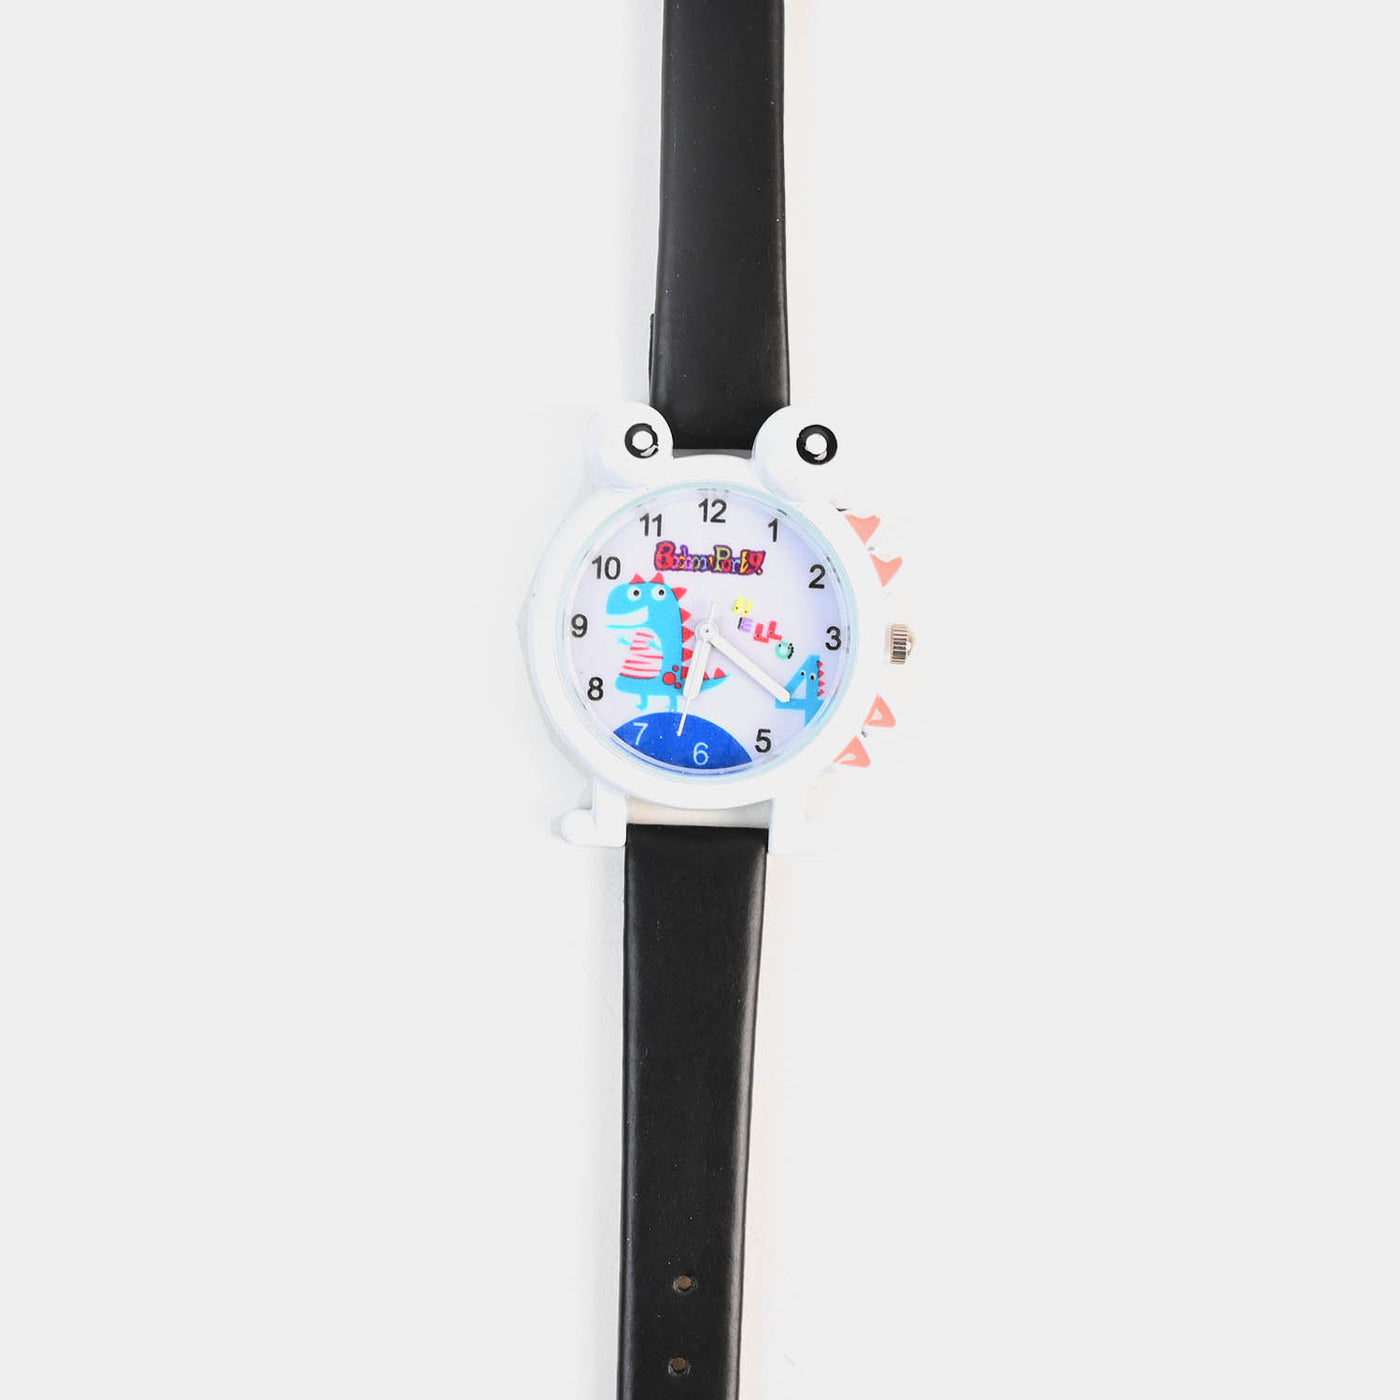 Analog Wristwatch For Kids